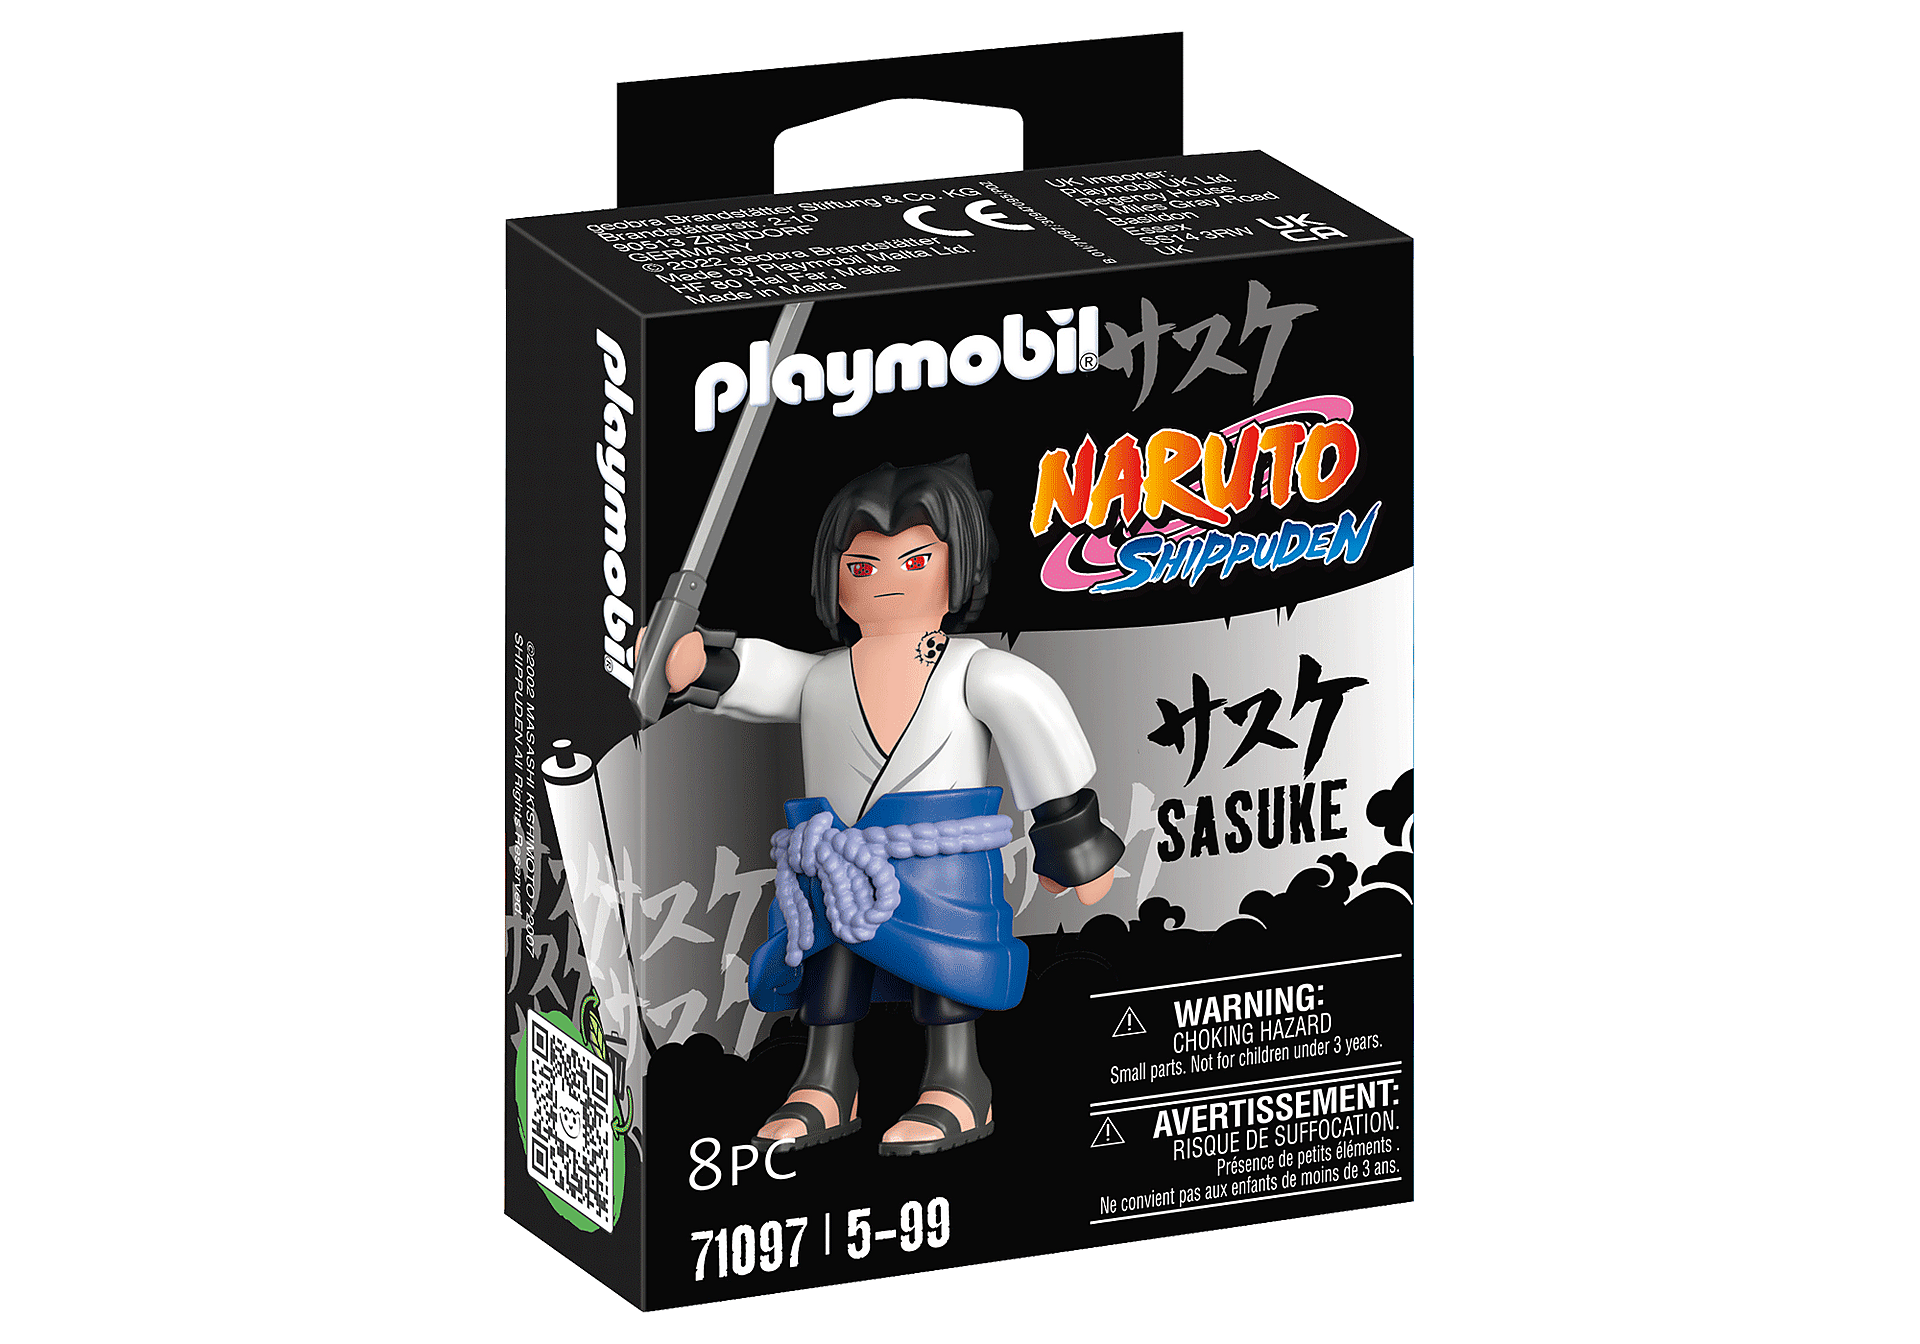 Playmobil Naruto Shippuden: Sasuke 71097